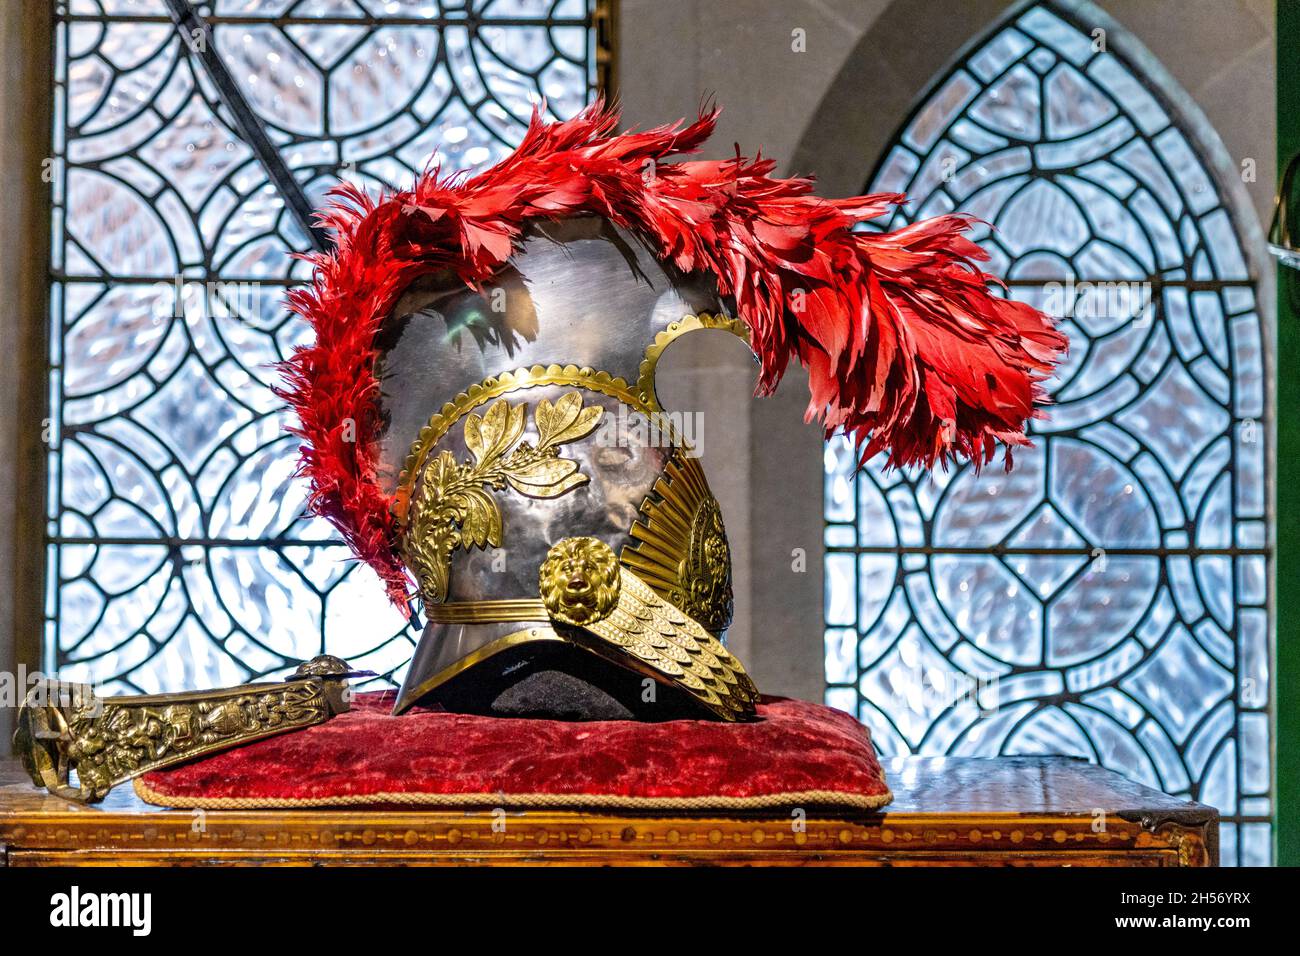 Casco medievale in cavalleria con ornamenti dorati e piume rosse esposto al castello di Arundel, West Sussex, Regno Unito Foto Stock